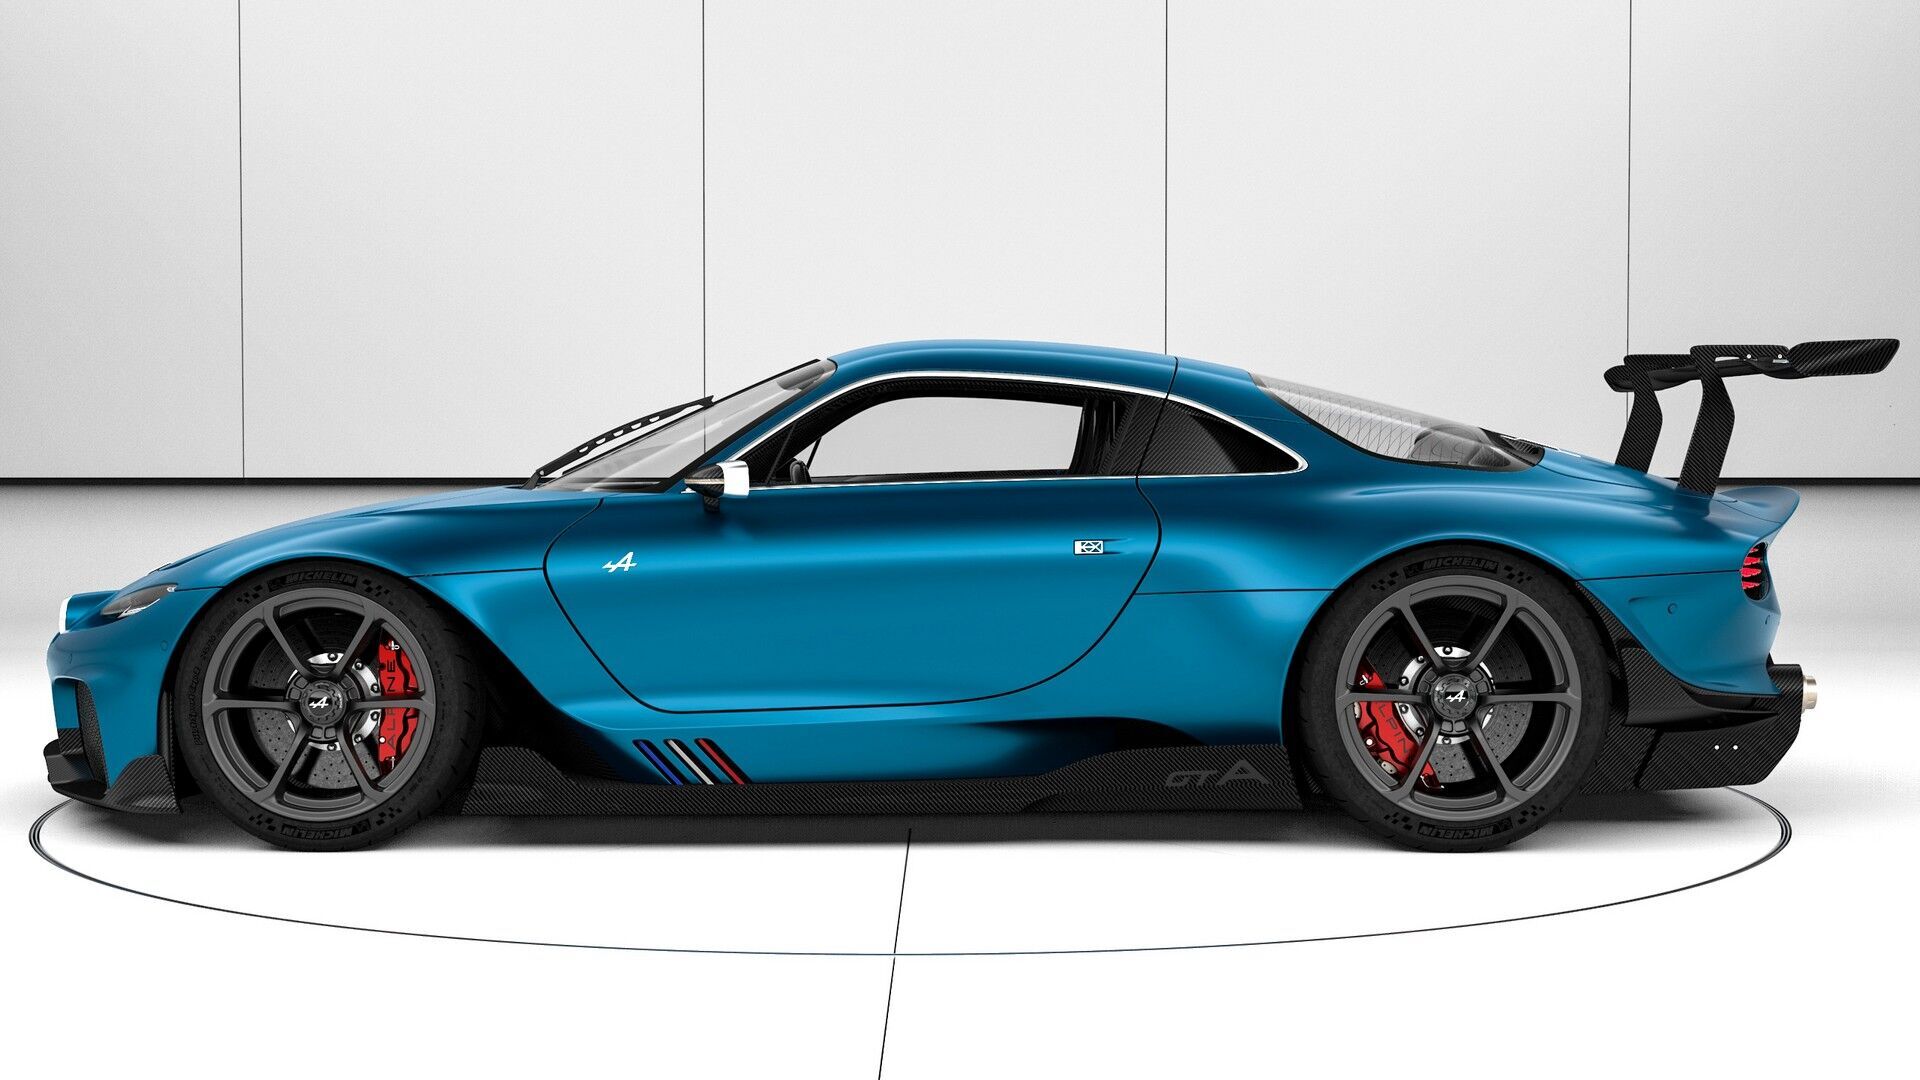 П'ятий екземпляр GTA Concept пофарбований у фірмовий синій колір марки